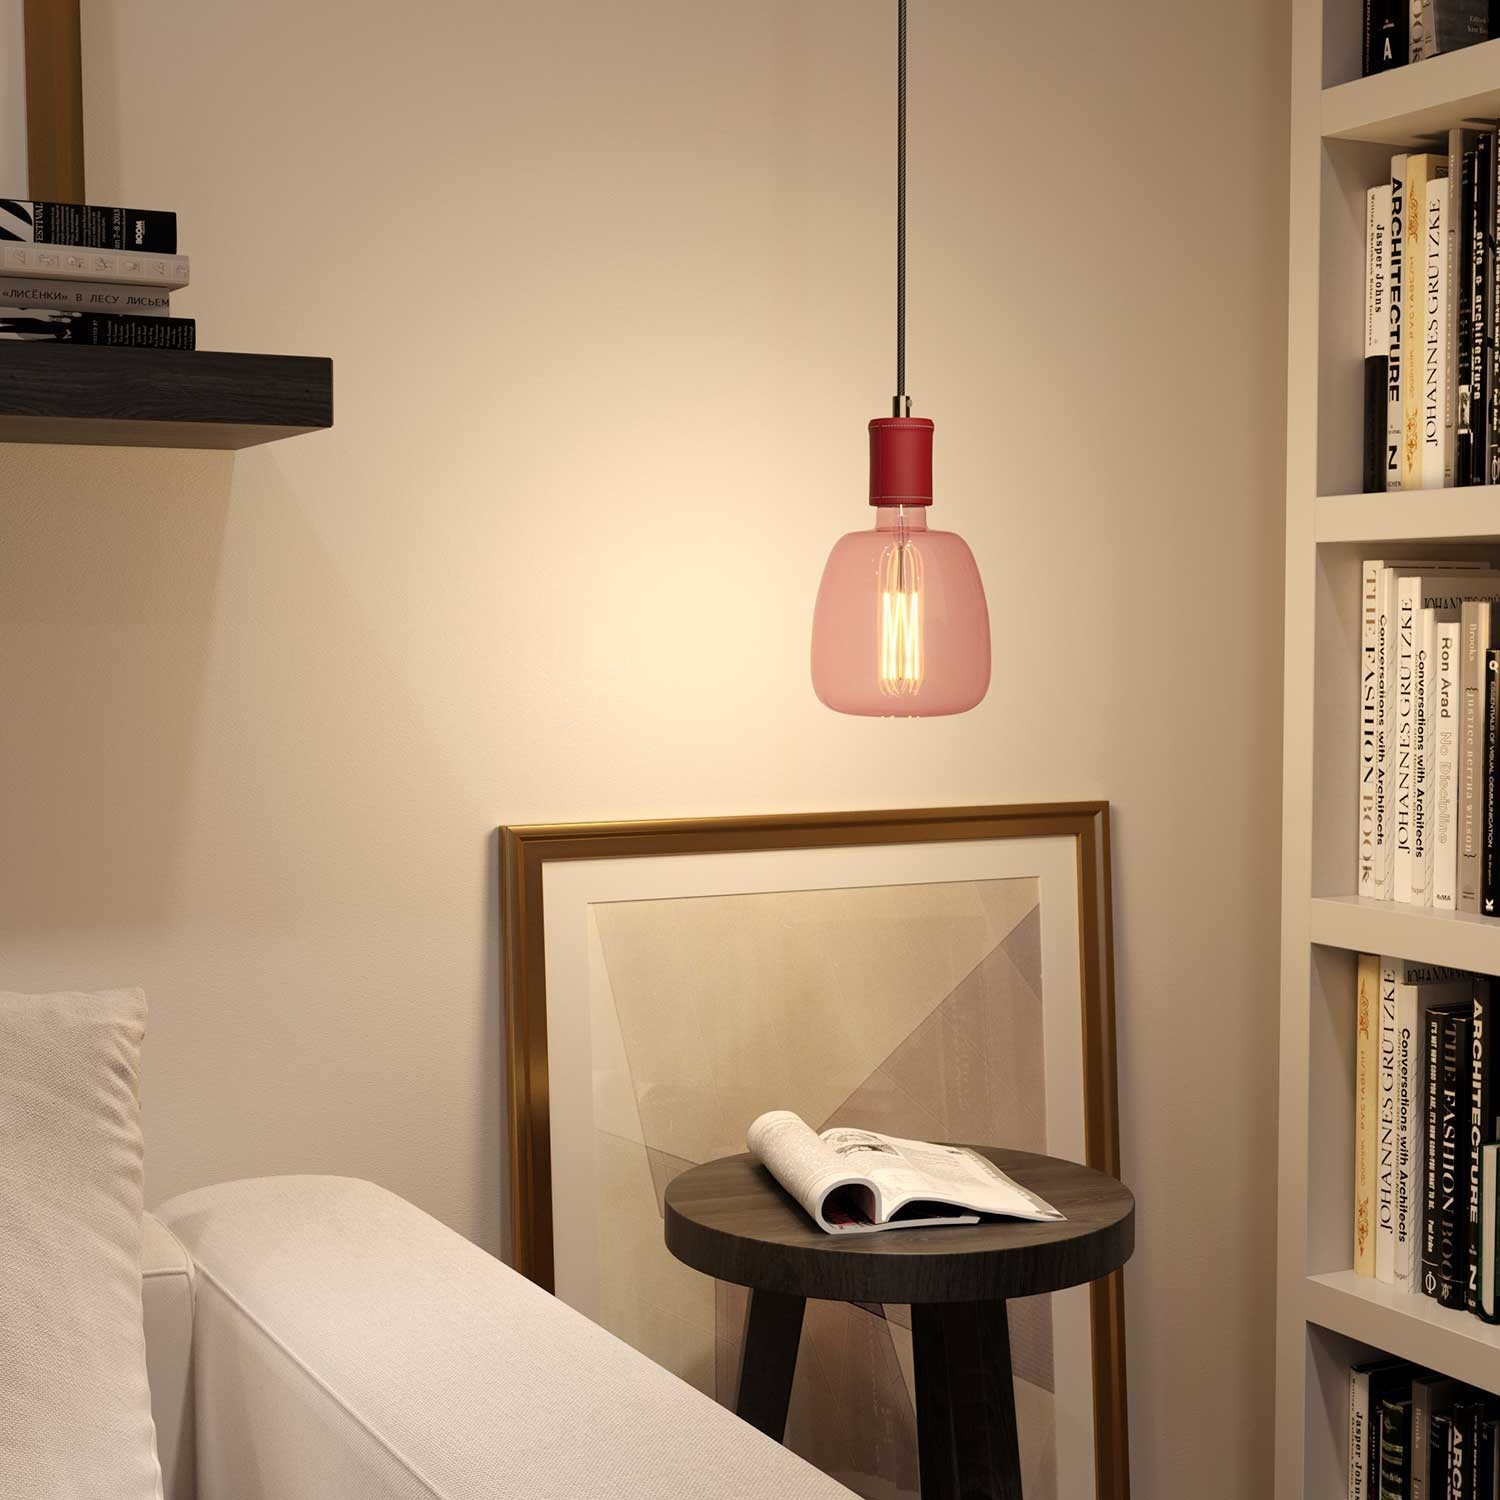 Hanglamp vervaardigd in Italië met textielkabel en koperen afwerking